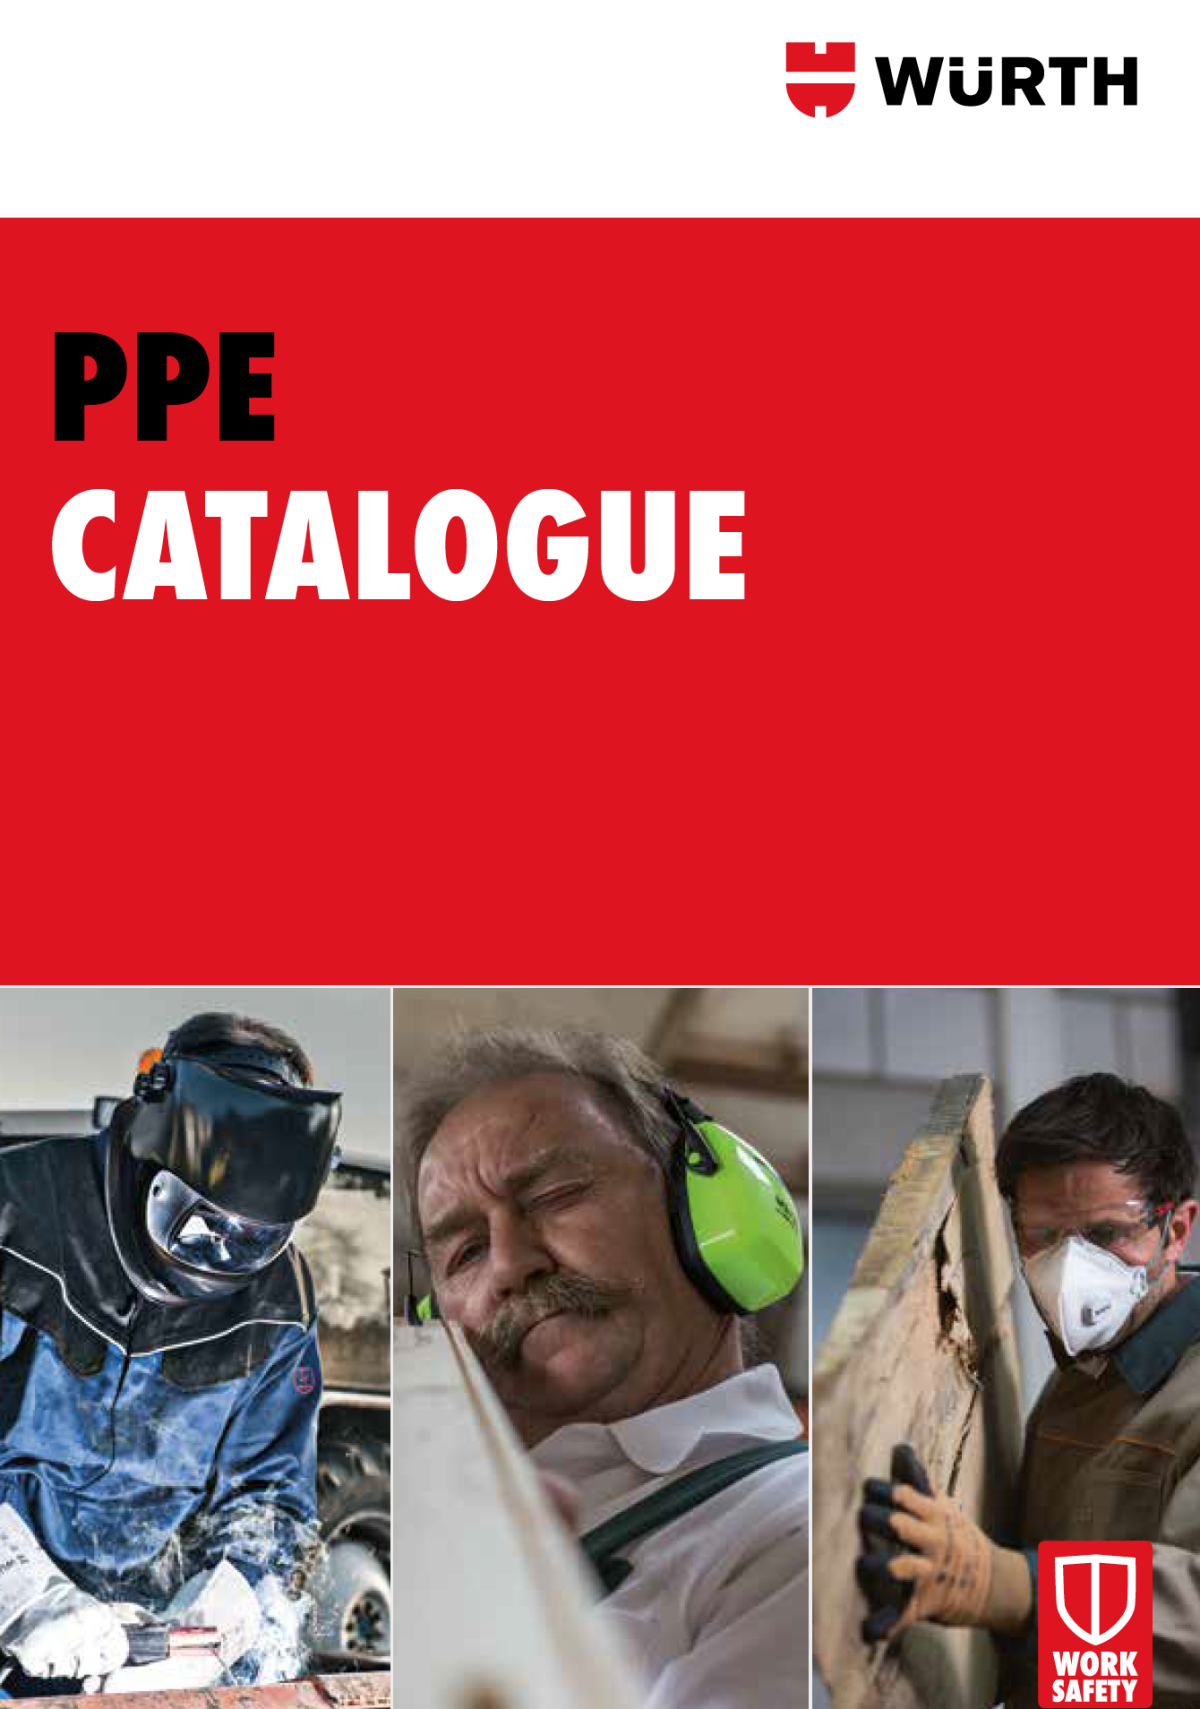 PPE Catalogue